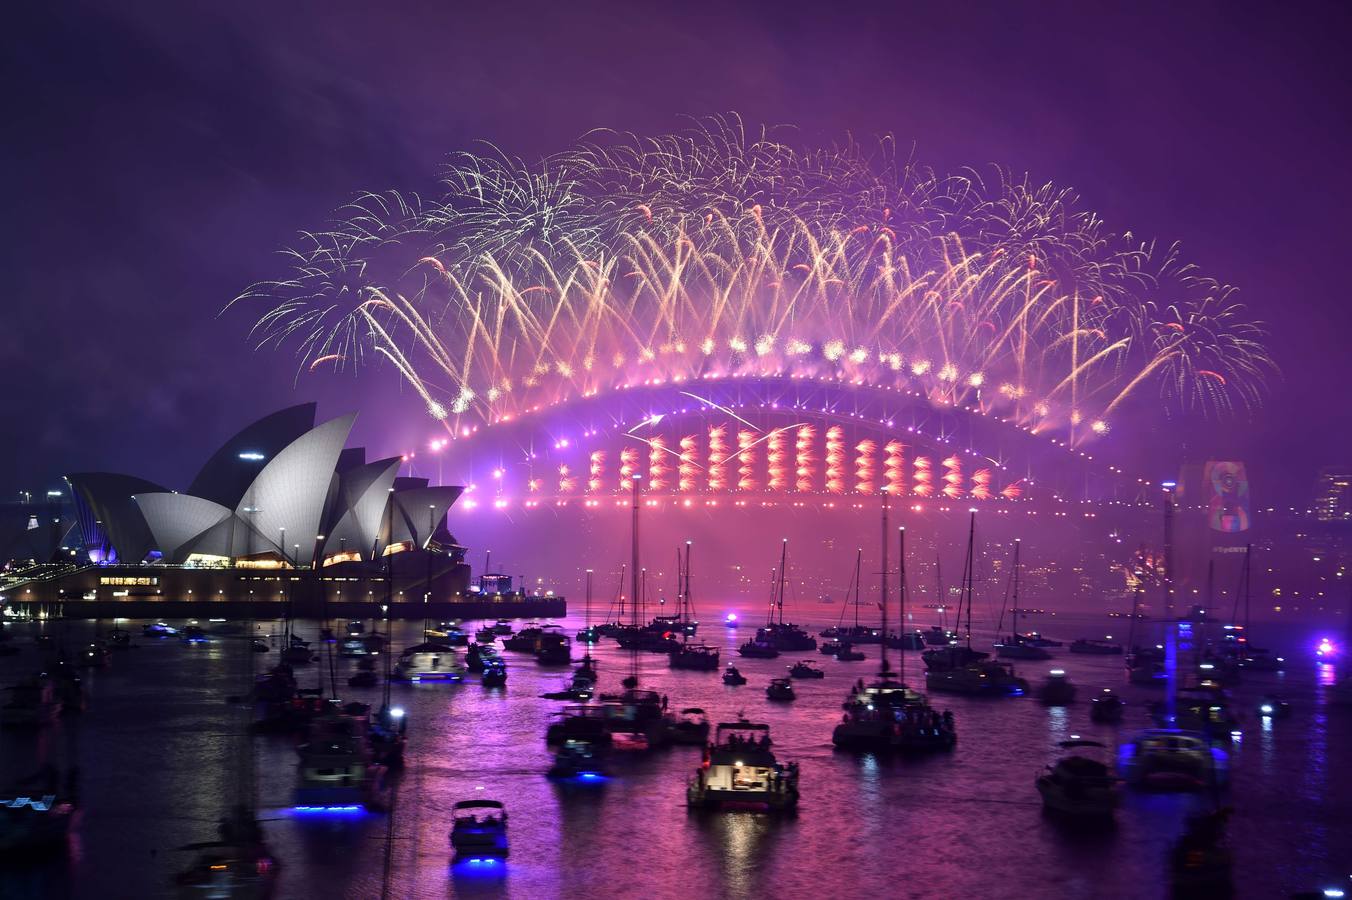 Sídney recibe el año nuevo con un gran espectáculo de fuegos artificiales sobre el puente de la bahía